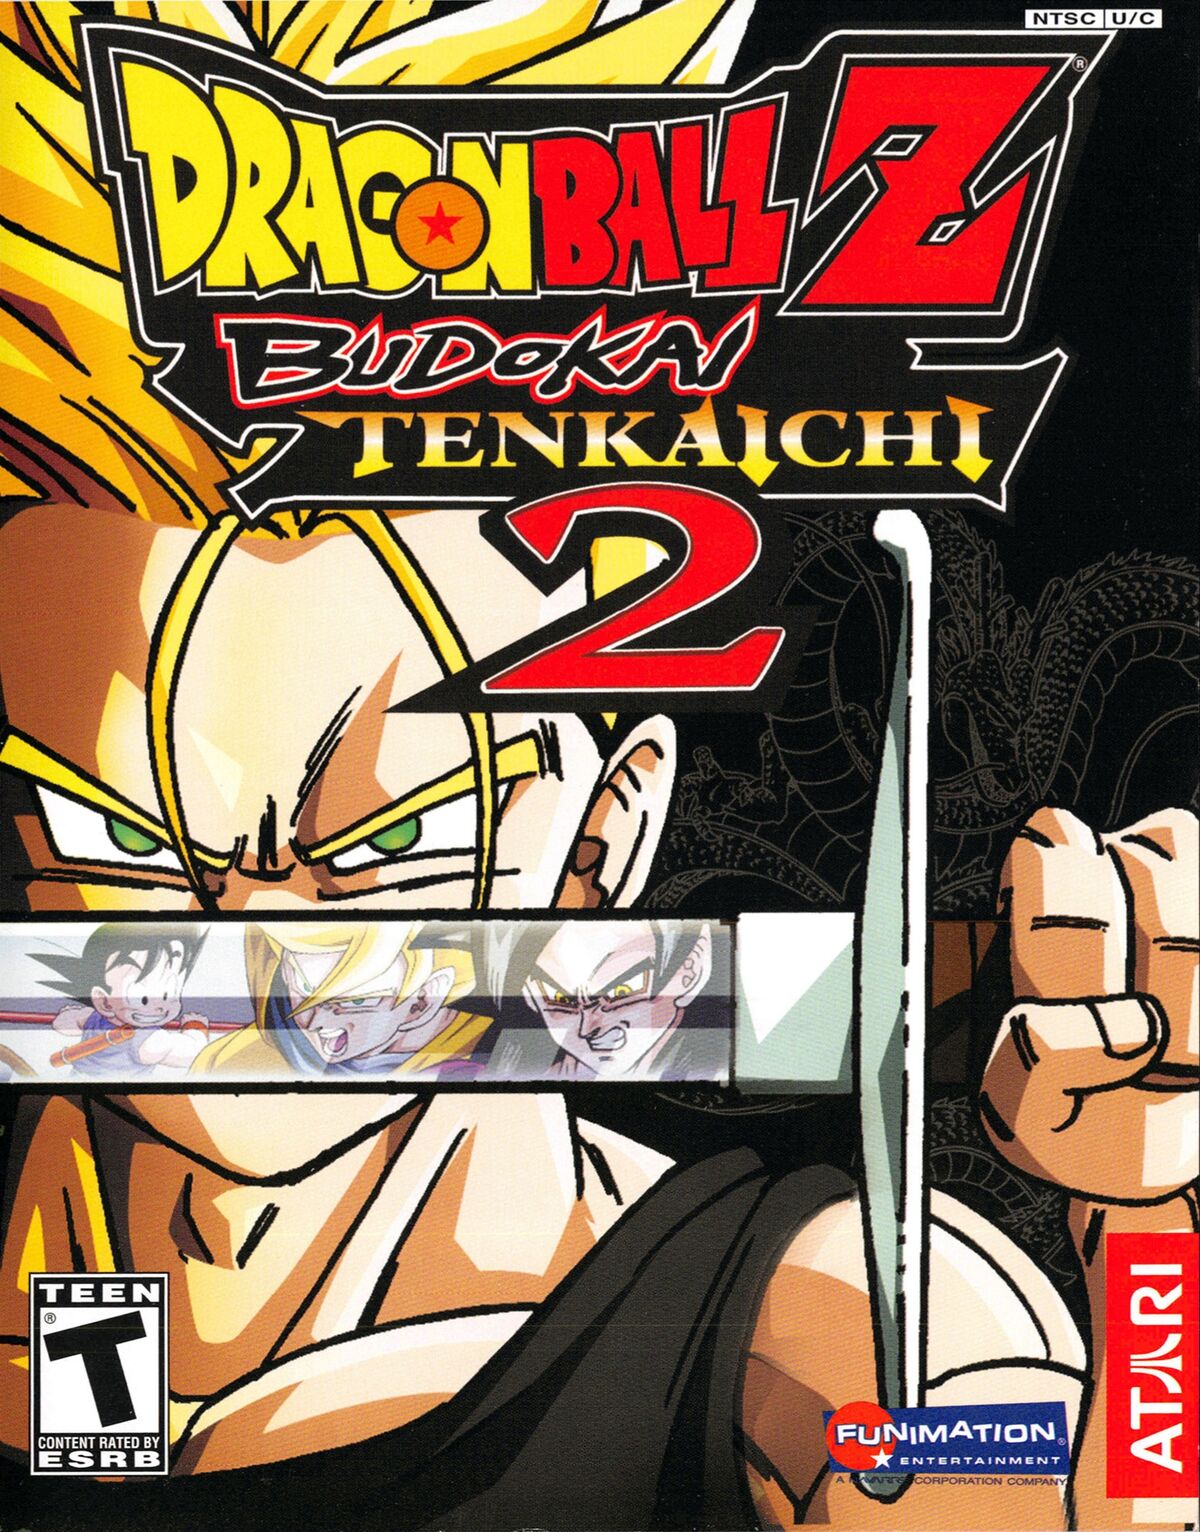 Live com Dragon Ball Z Budokai Tenkaichi 3 Versão Brasileira Beta 3 Ps2 